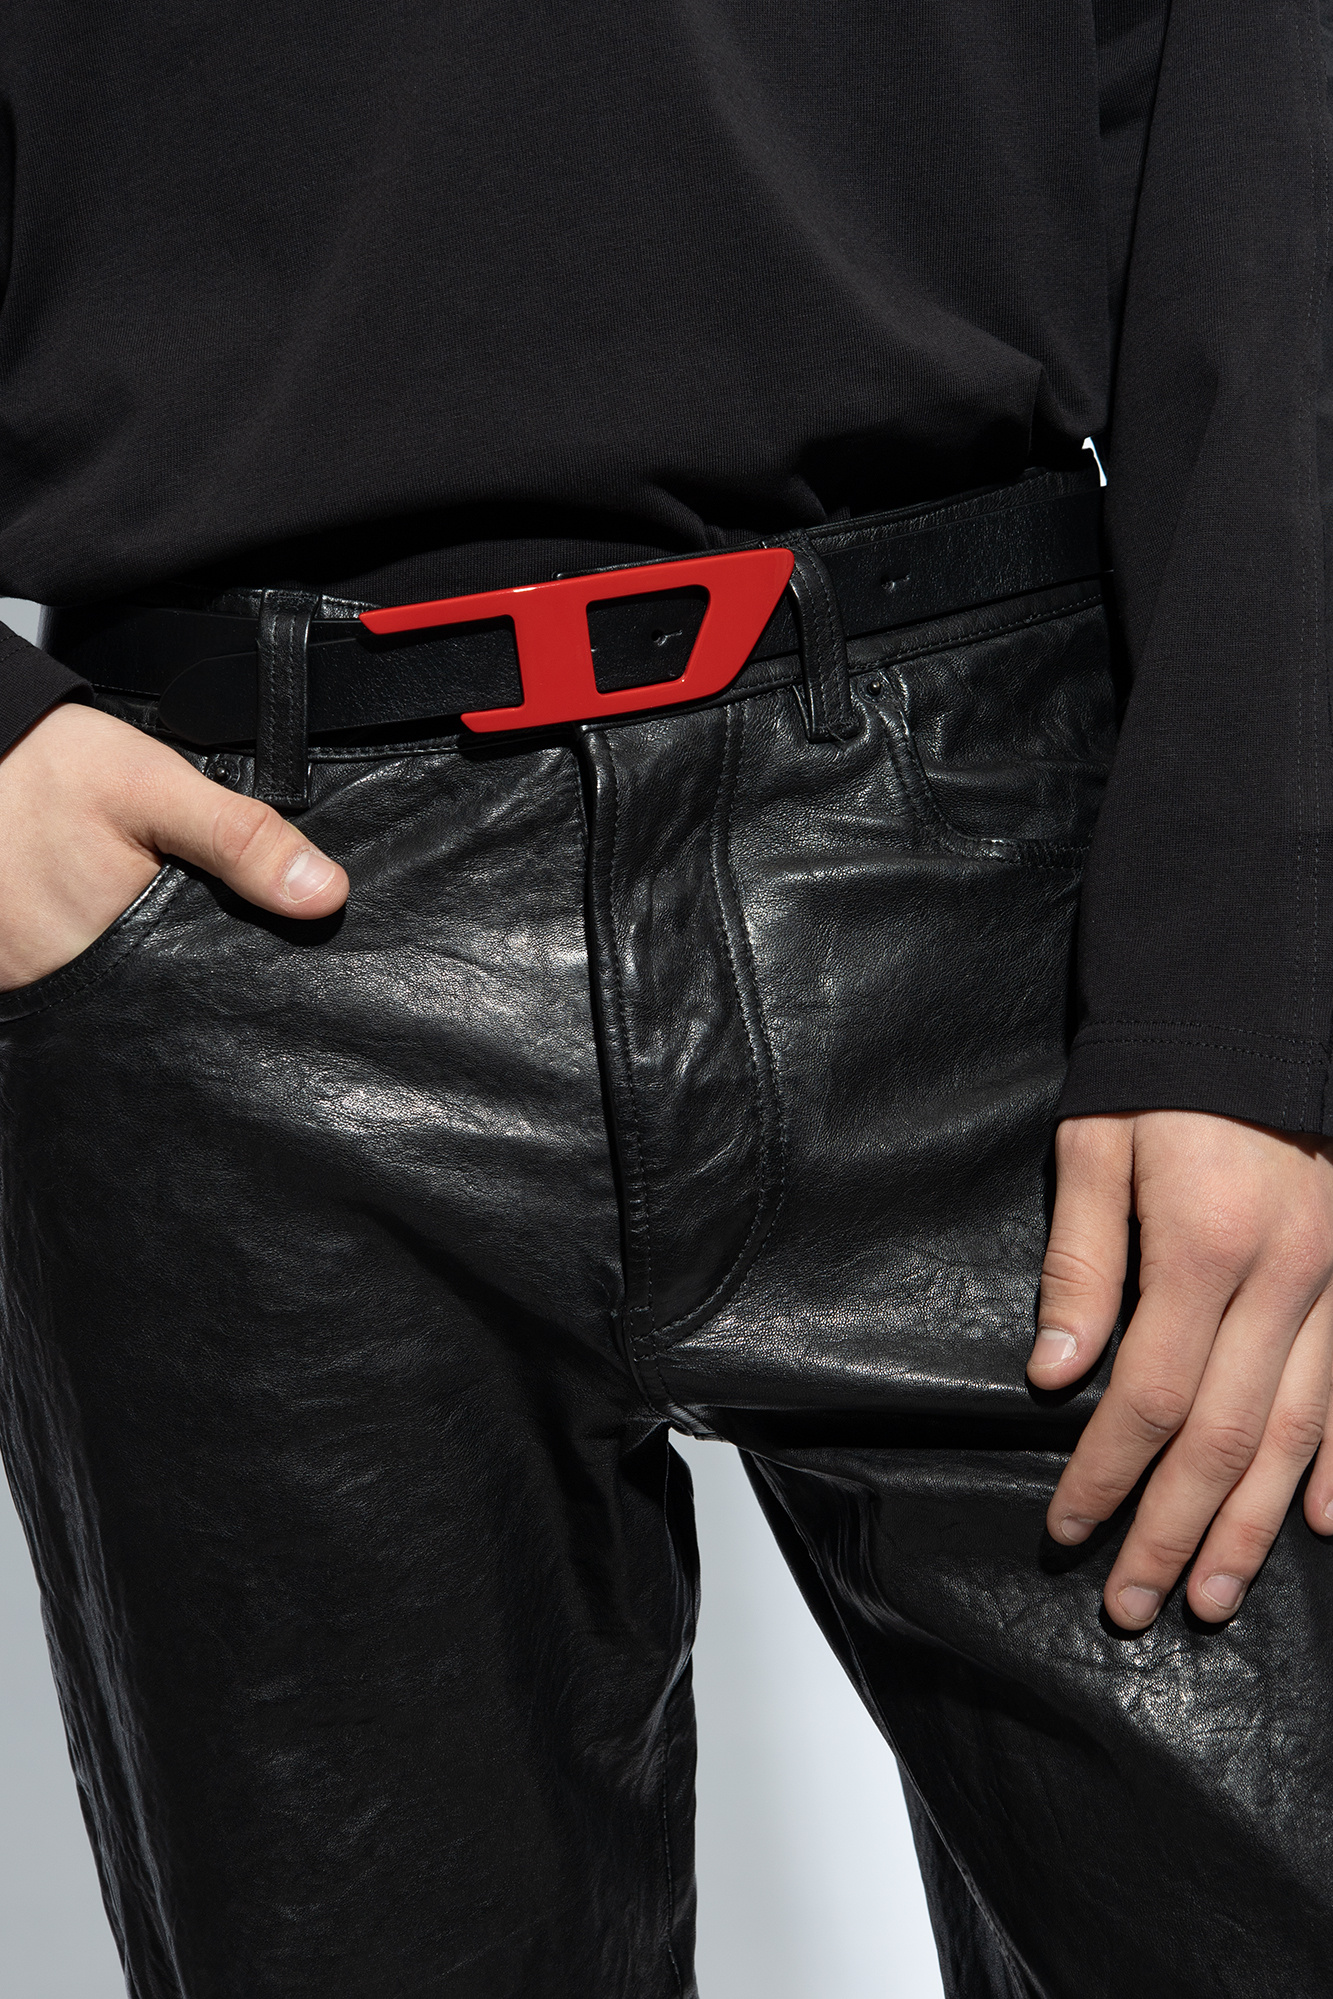 Diesel 'D LOGO B-DLOGO II' belt | Men's Accessories | Vitkac